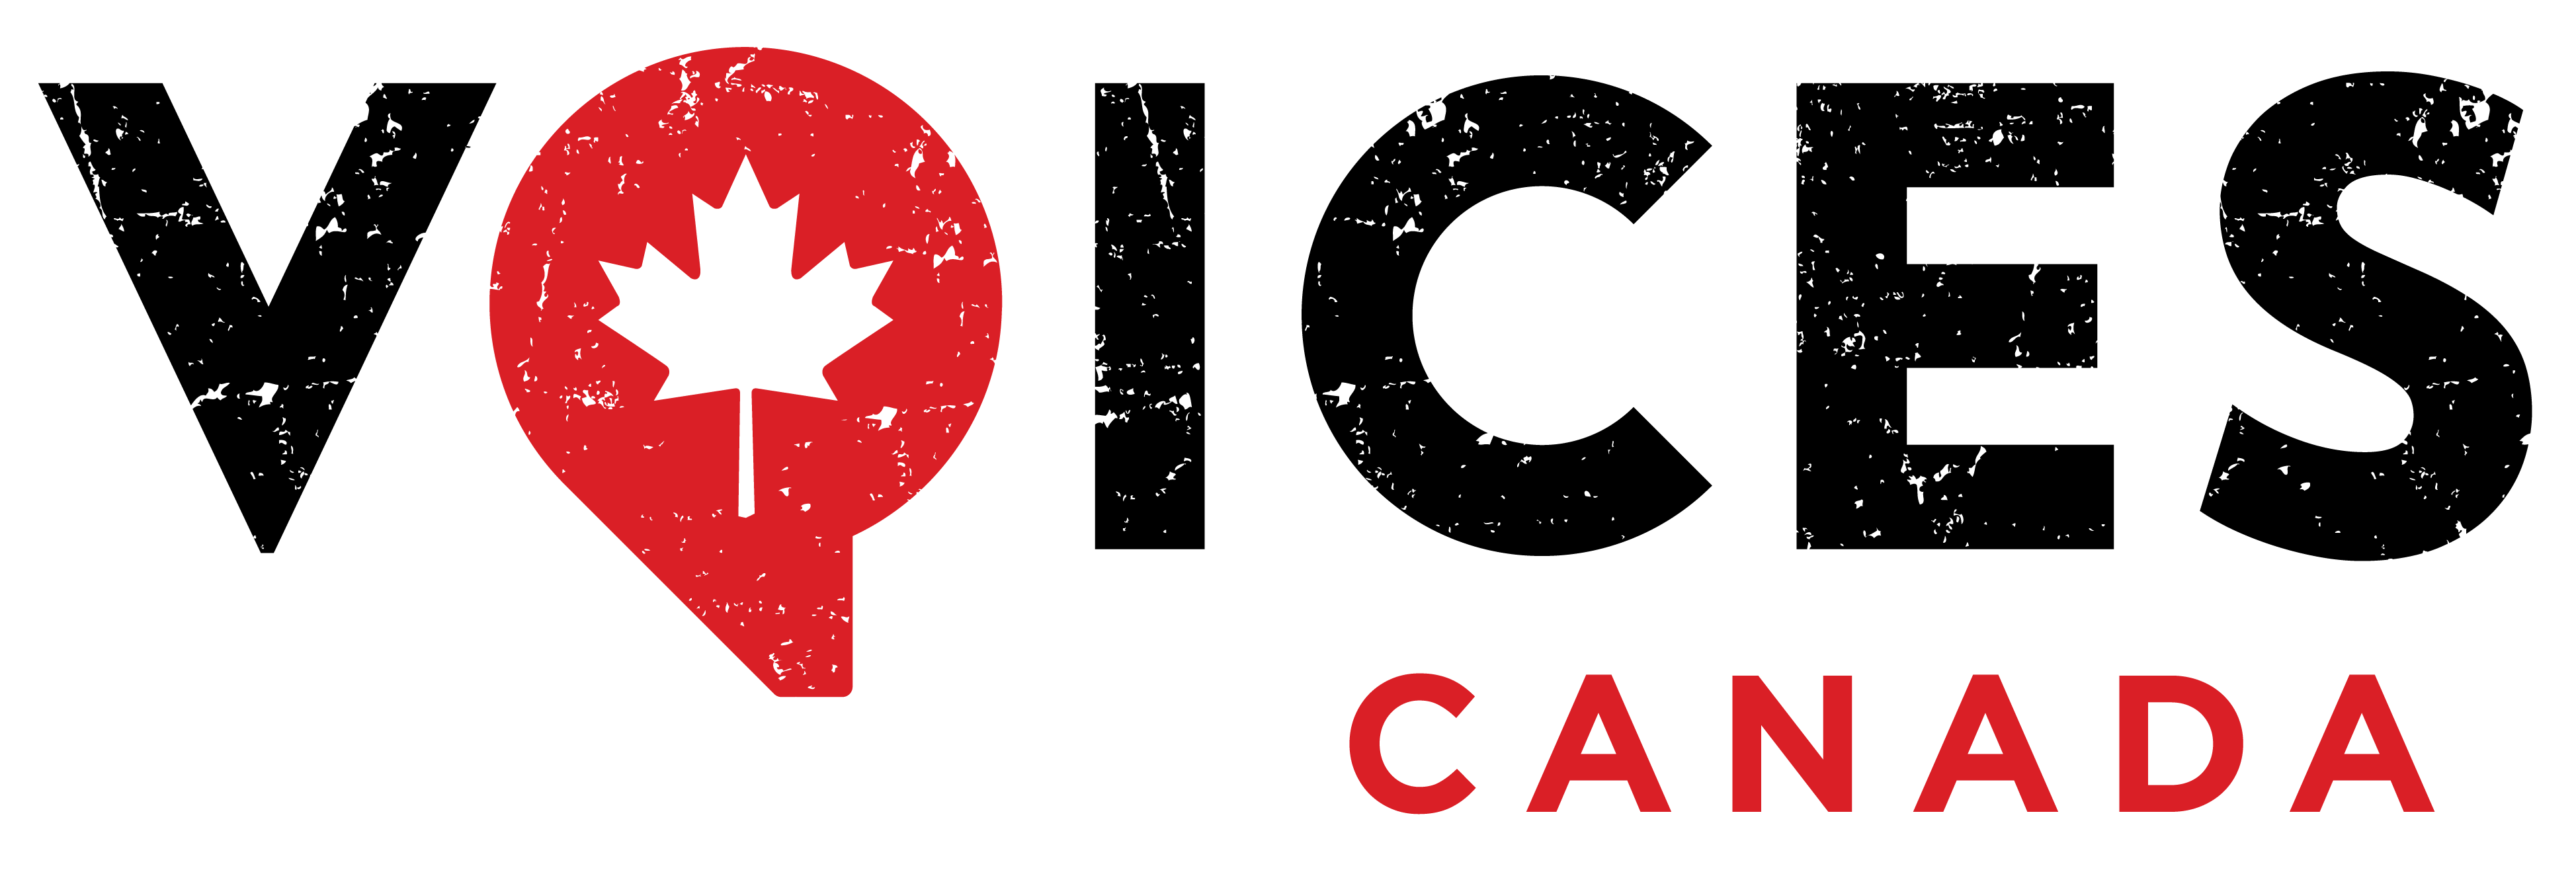 voices canada logo